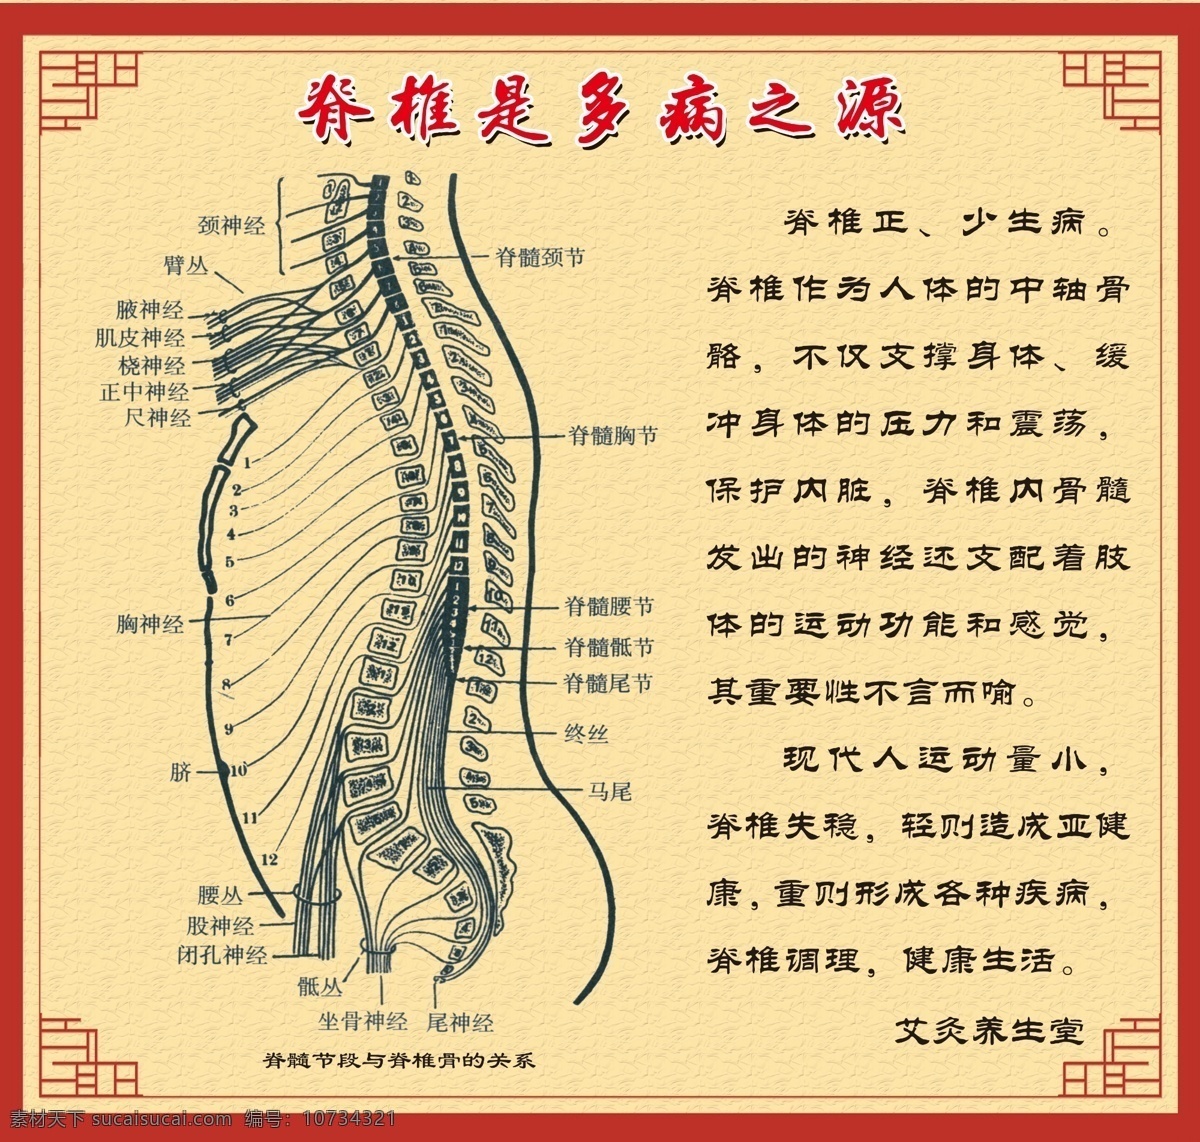 脊椎 脊椎图 脊髓节段 脊椎骨 养生 脊髓 中医图 古典花纹 古典图 展板模板 广告设计模板 源文件